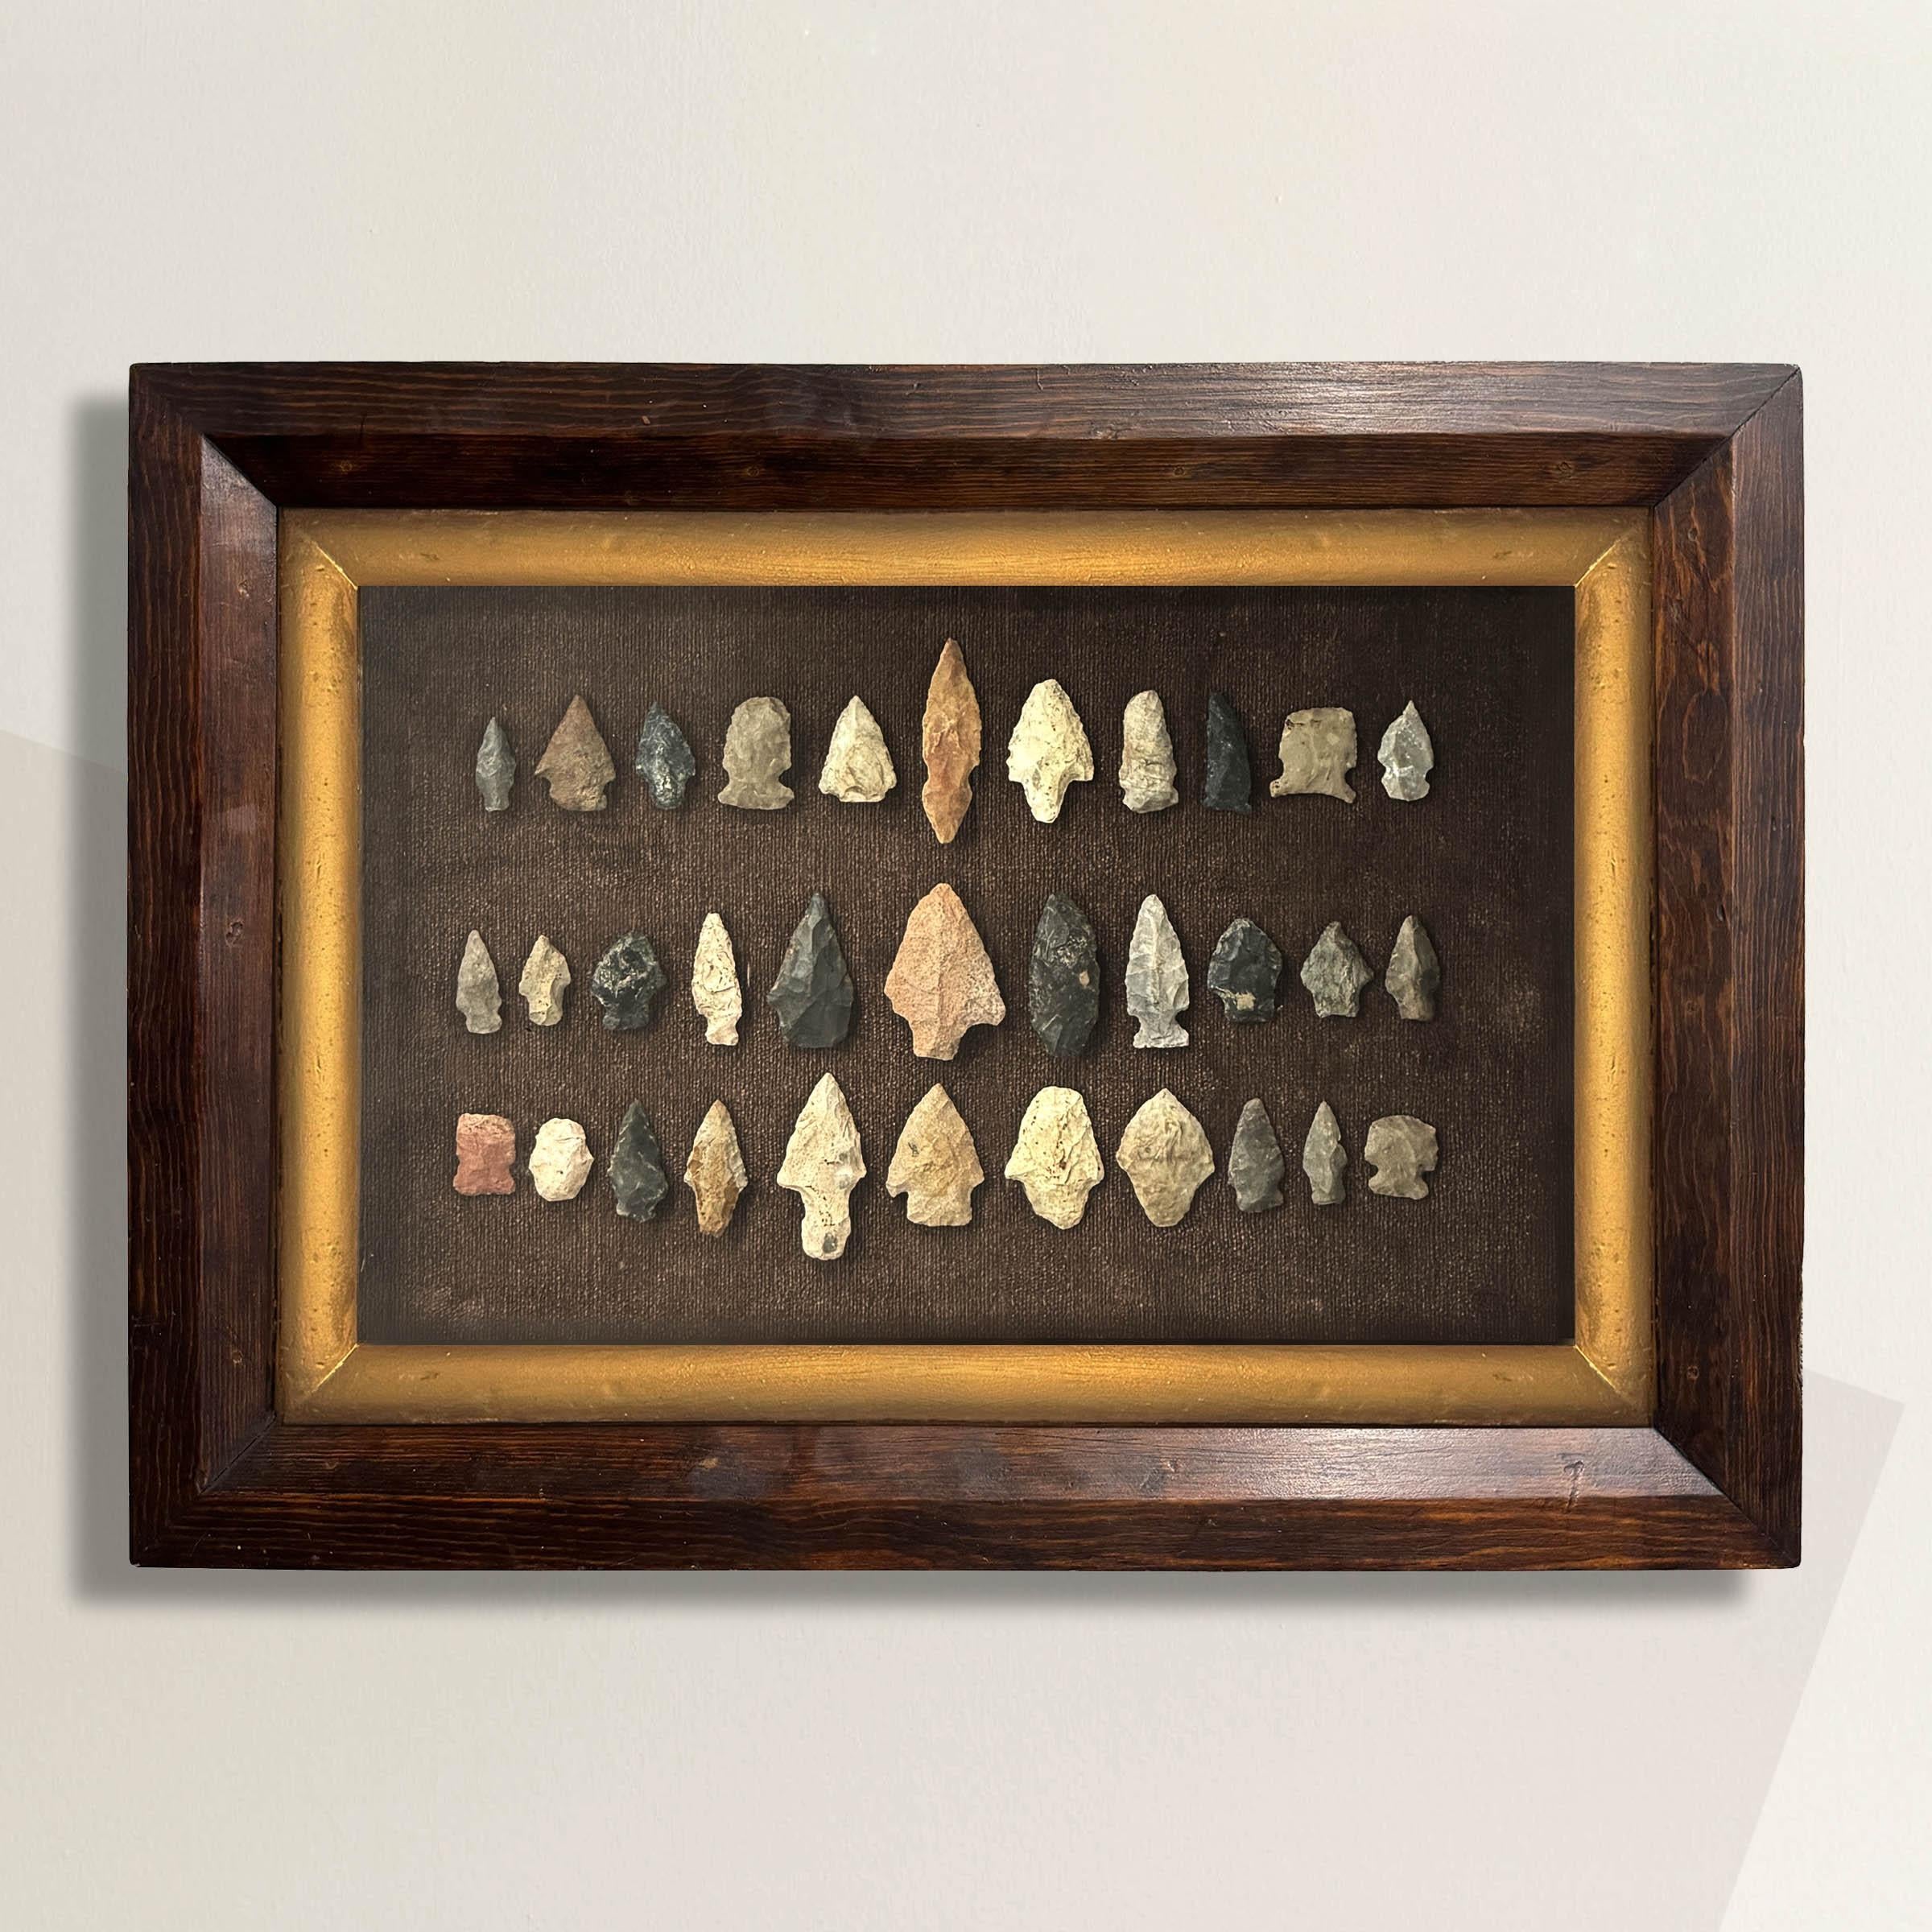 Diese Sammlung von 33 indianischen Pfeilspitzen, die in Waukesha County in Wisconsin gefunden wurden, bietet einen Einblick in die reiche Geschichte der Ureinwohner dieser Region. Gerahmt in einem Rahmen aus dem 19. Jahrhundert mit einer Goldleiste,